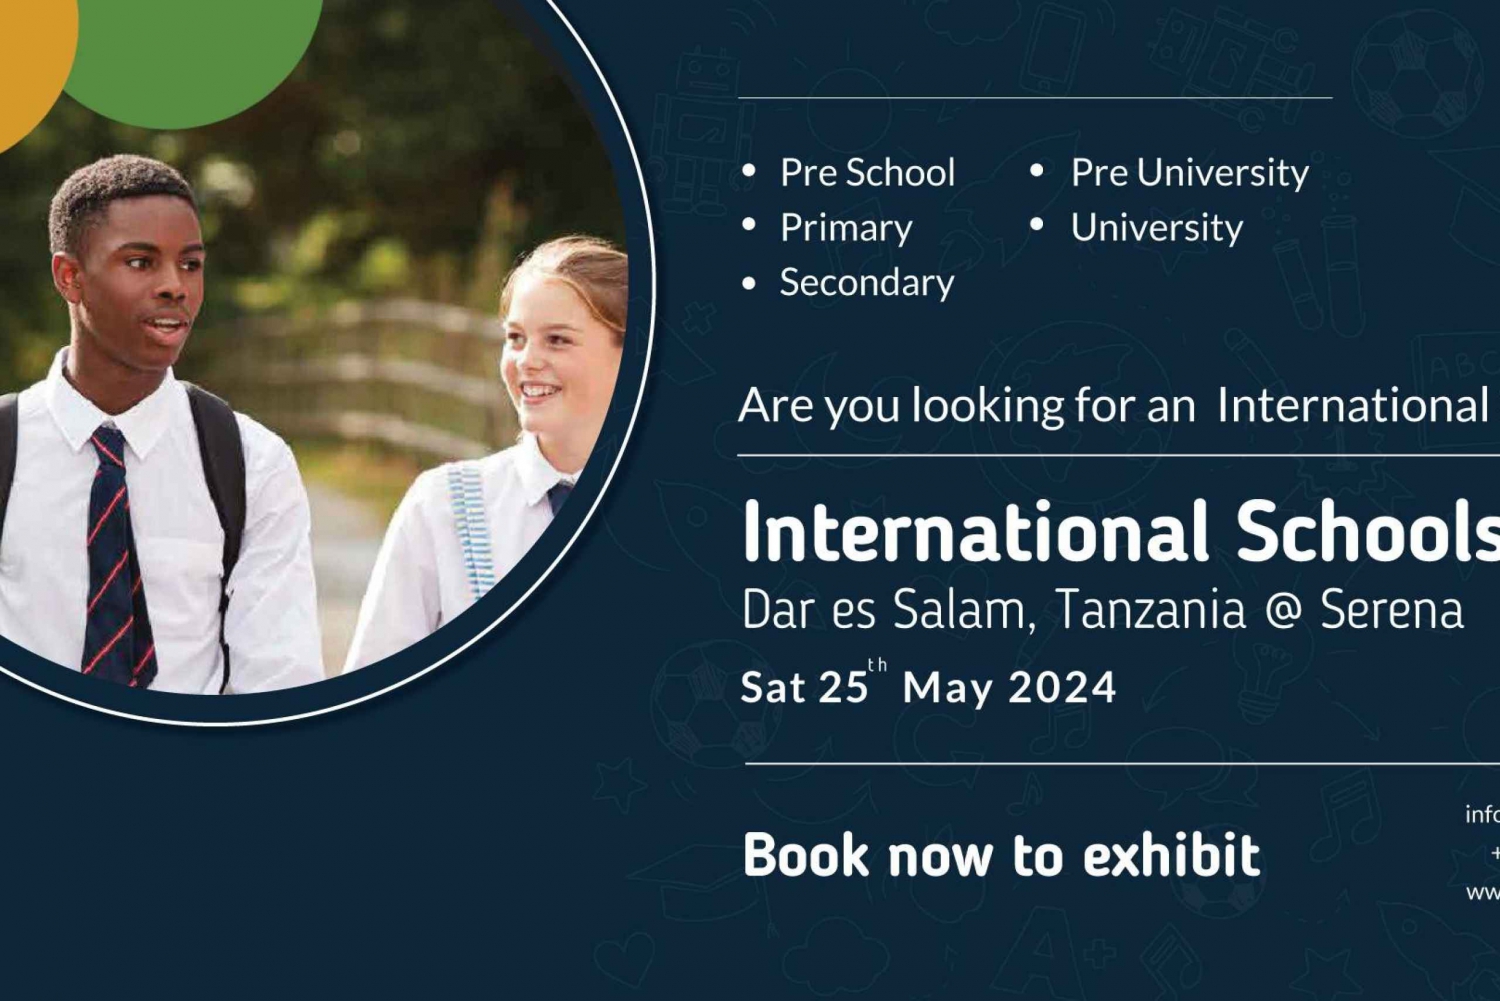 Dar es Salaam:Internasjonal utdanningsmesse for skoler